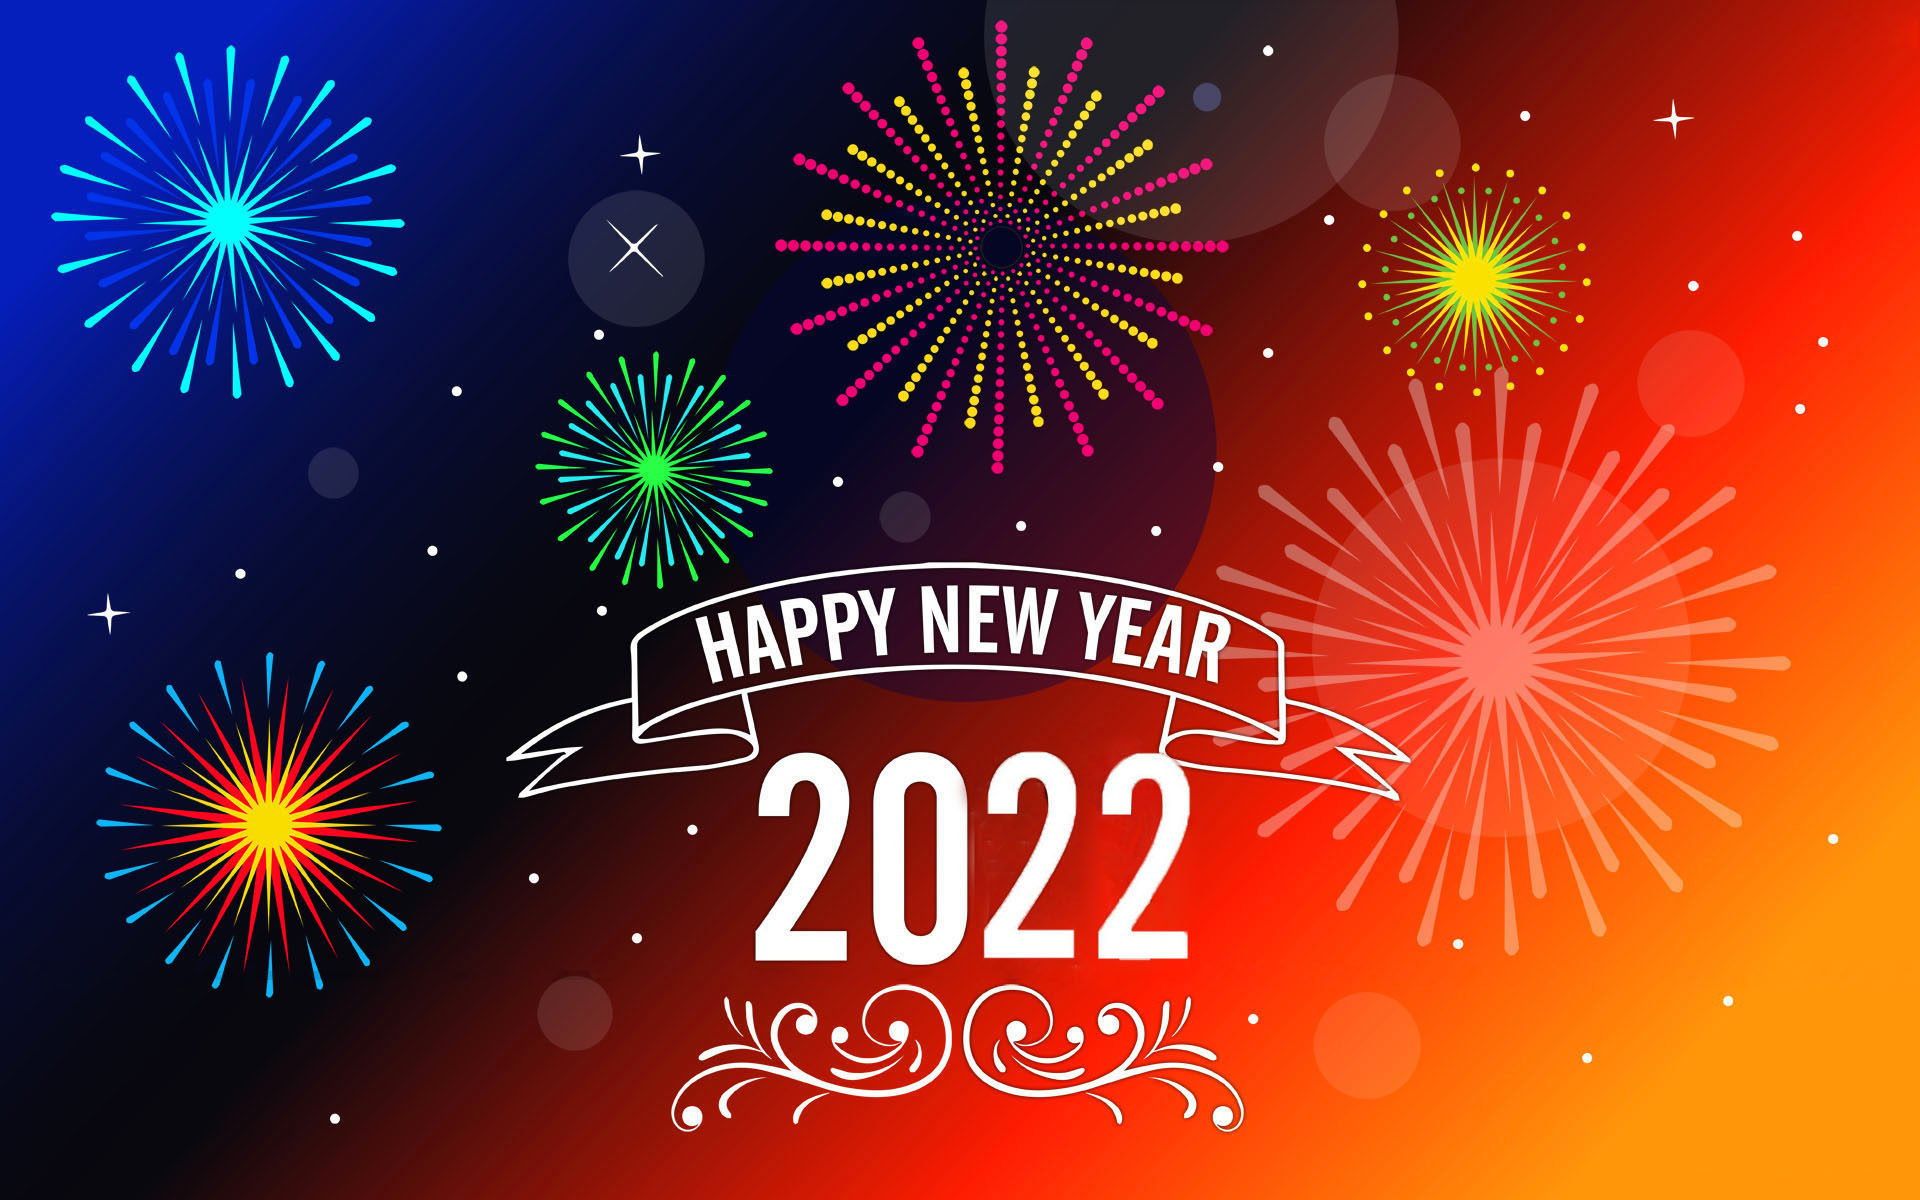 Happy New Years 2022 Desktop Wallpapers - Wallpaper Cave